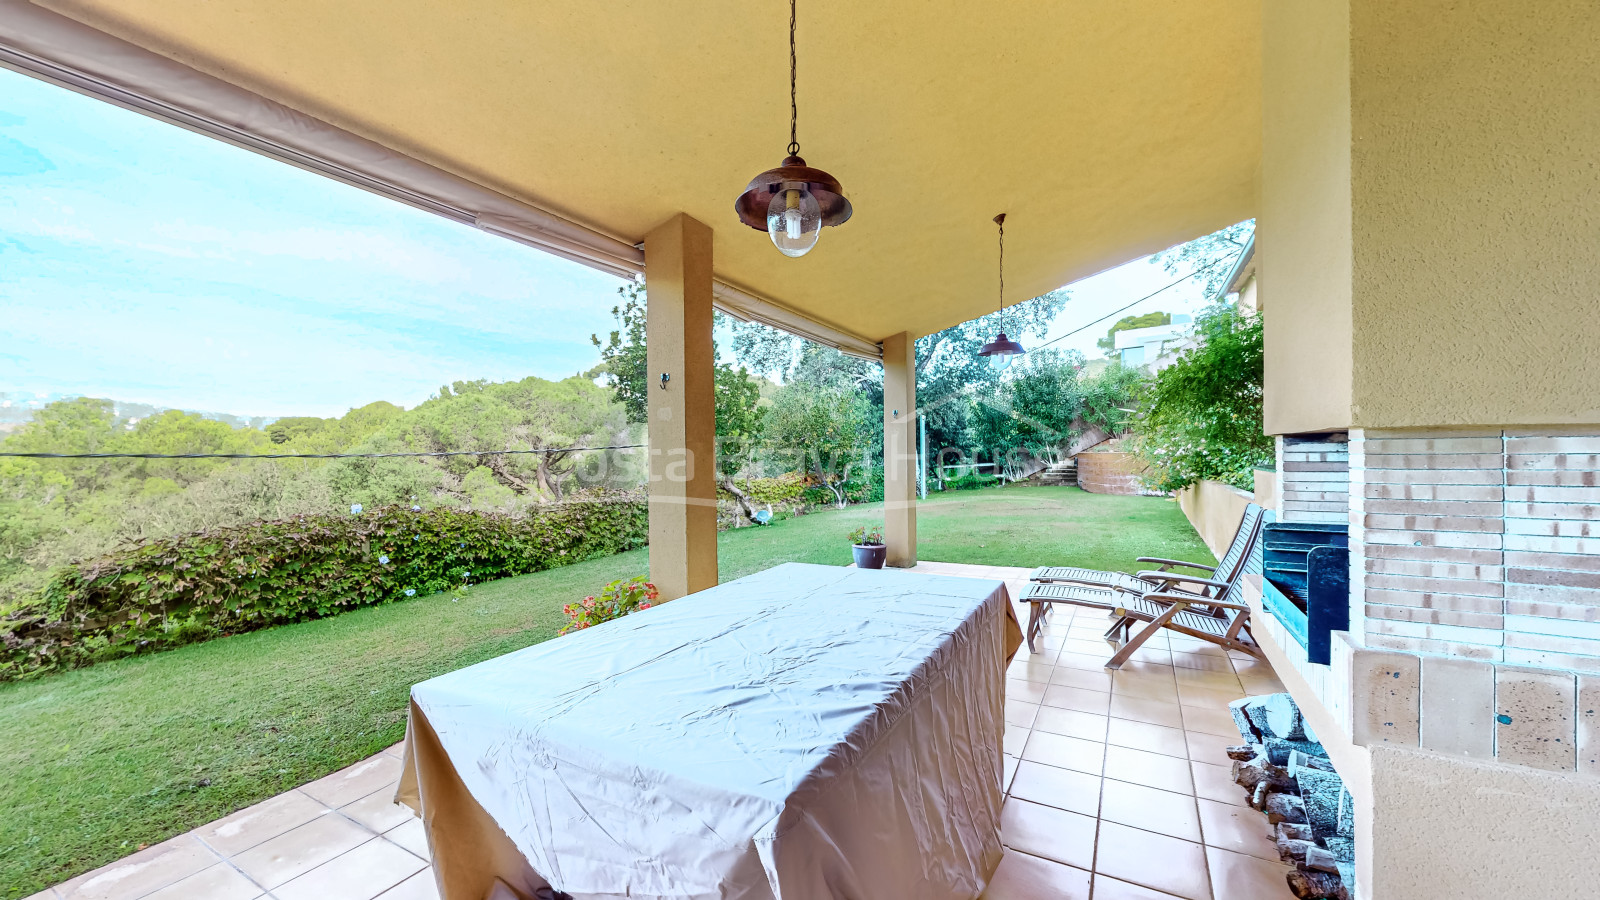 Casa amb jardí en venda a Tamariu, a només 5 minuts a peu de la platja i el mar